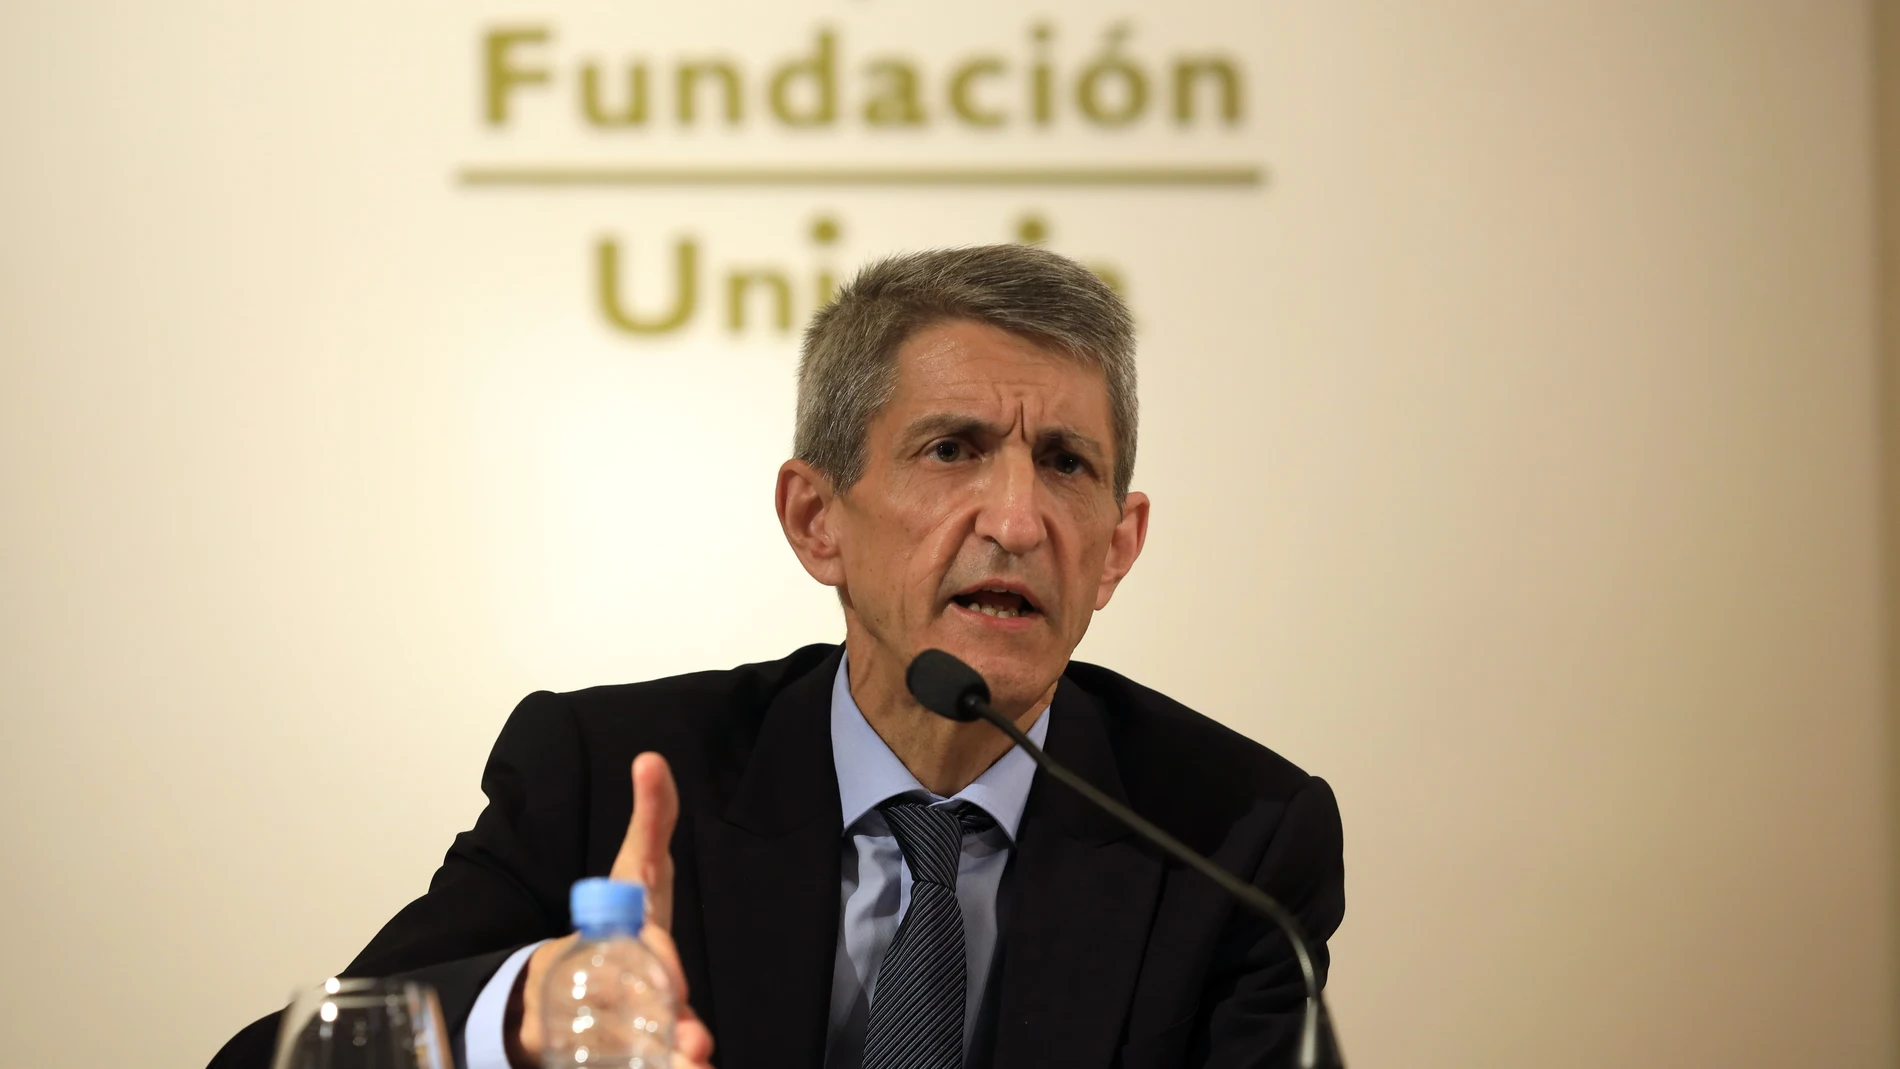 Imagen de archivo del nuevo presidente de la Fundación Bancaria Unicaja, José M. Domínguez